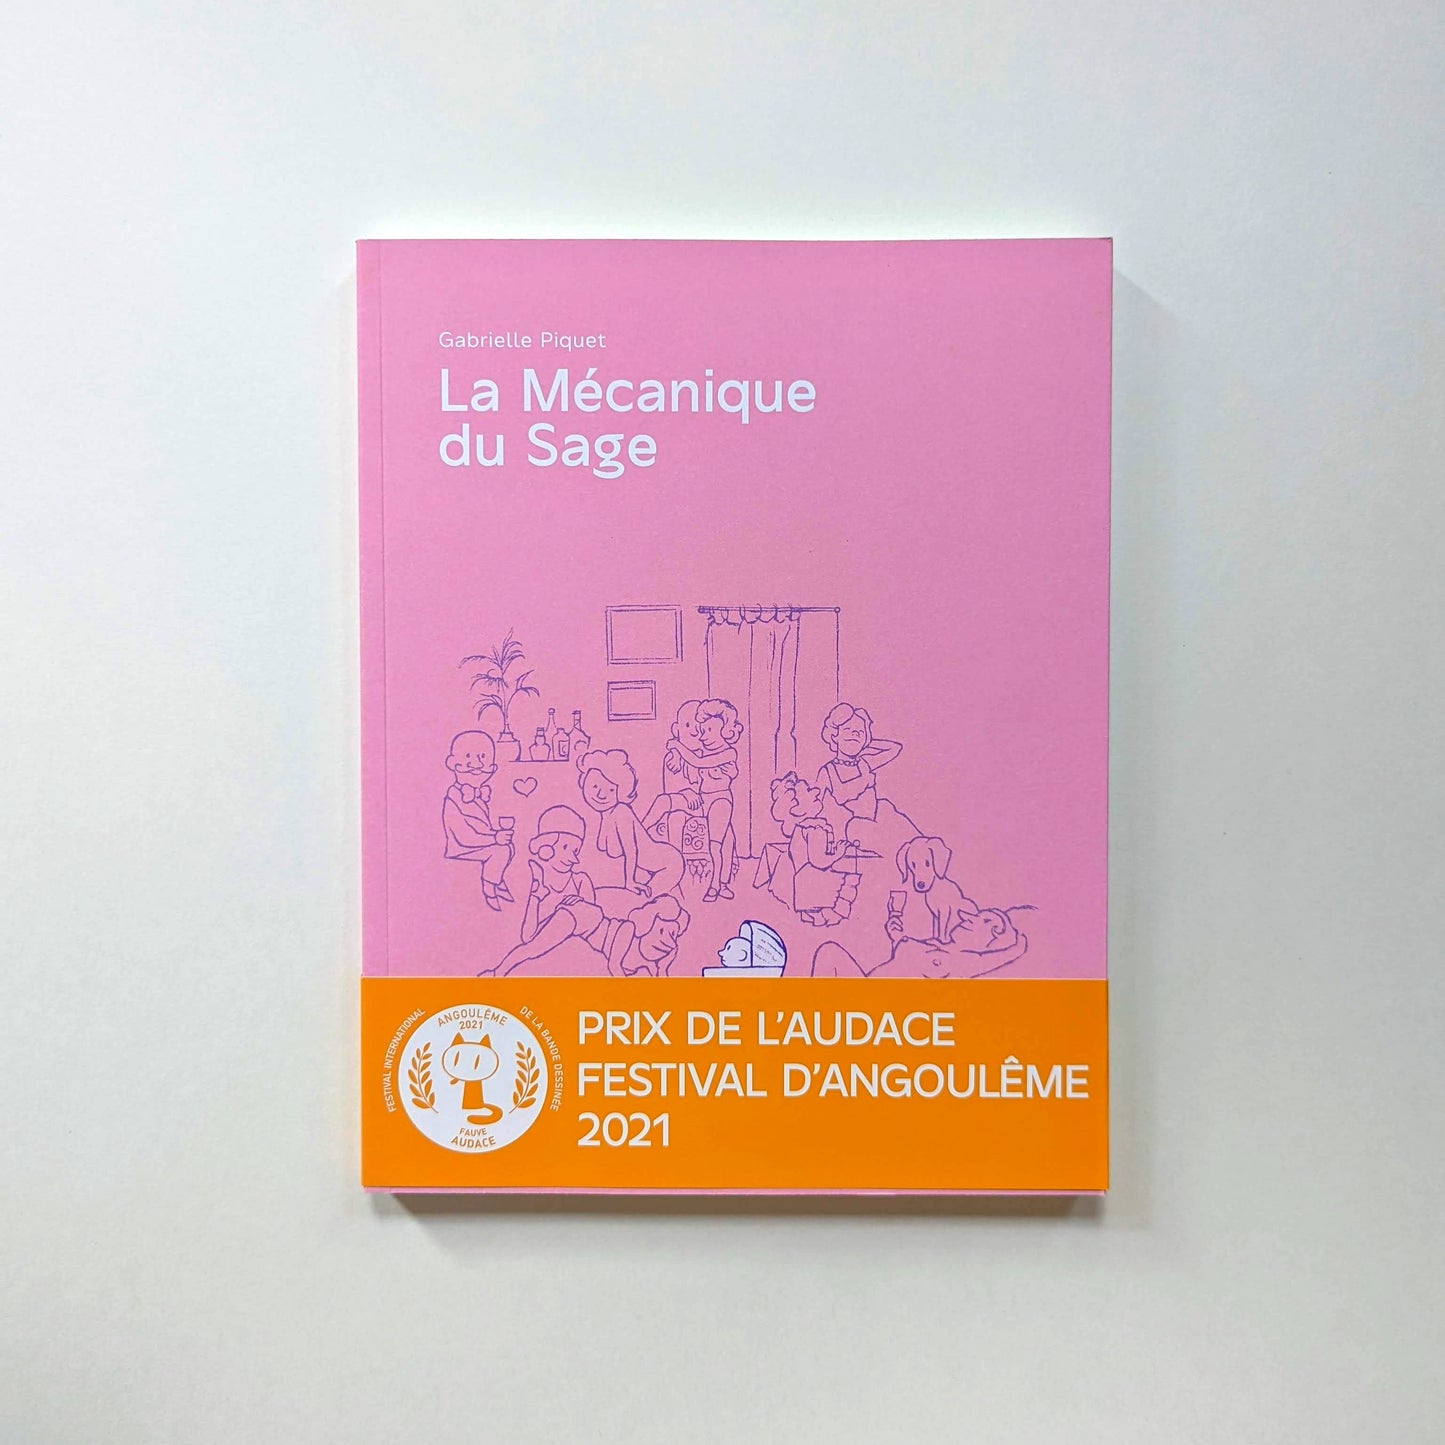 La Mécanique du Sage (The Mechanics of the Sage) by Gabrielle Piquet